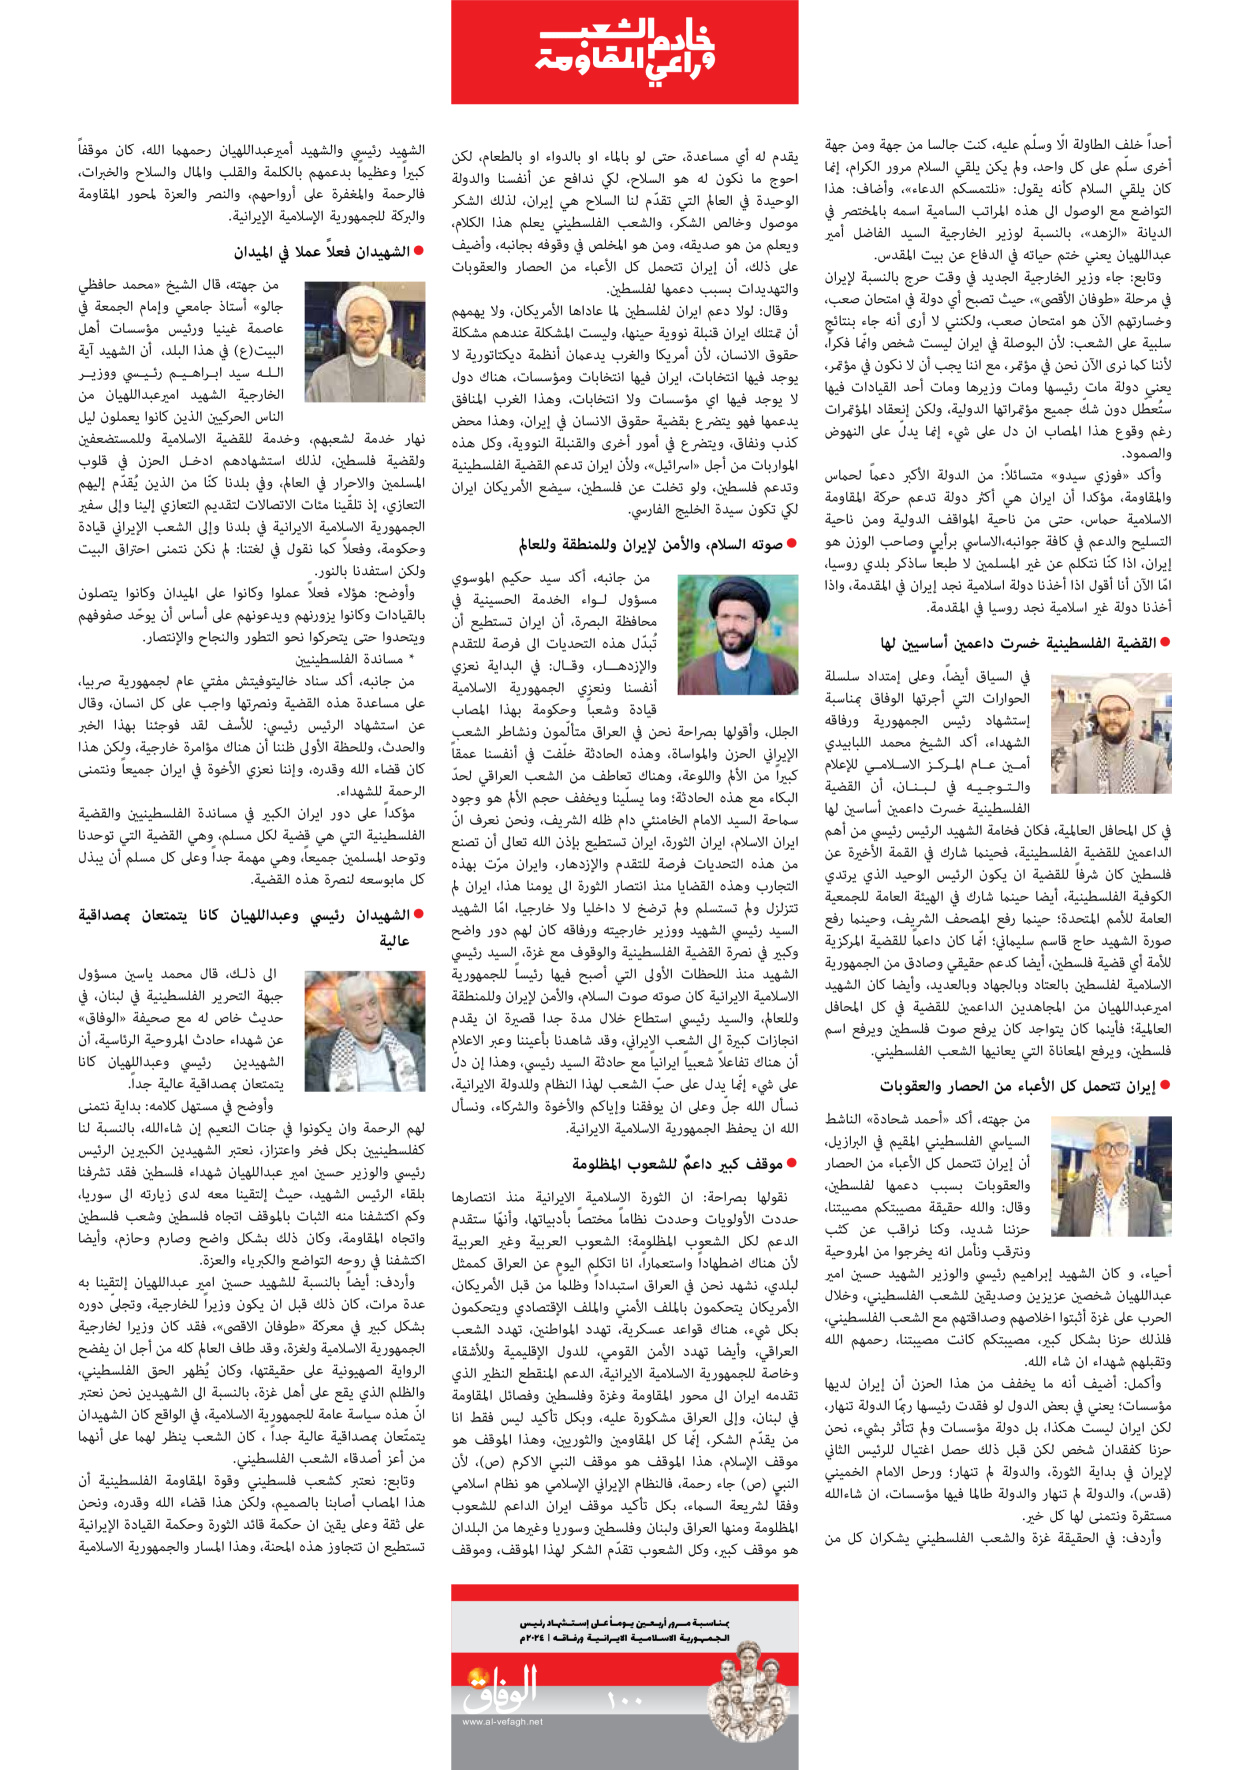 صحیفة ایران الدولیة الوفاق - ملحق ویژه نامه چهلم شهید رییسی - ٢٩ يونيو ٢٠٢٤ - الصفحة ۹۹